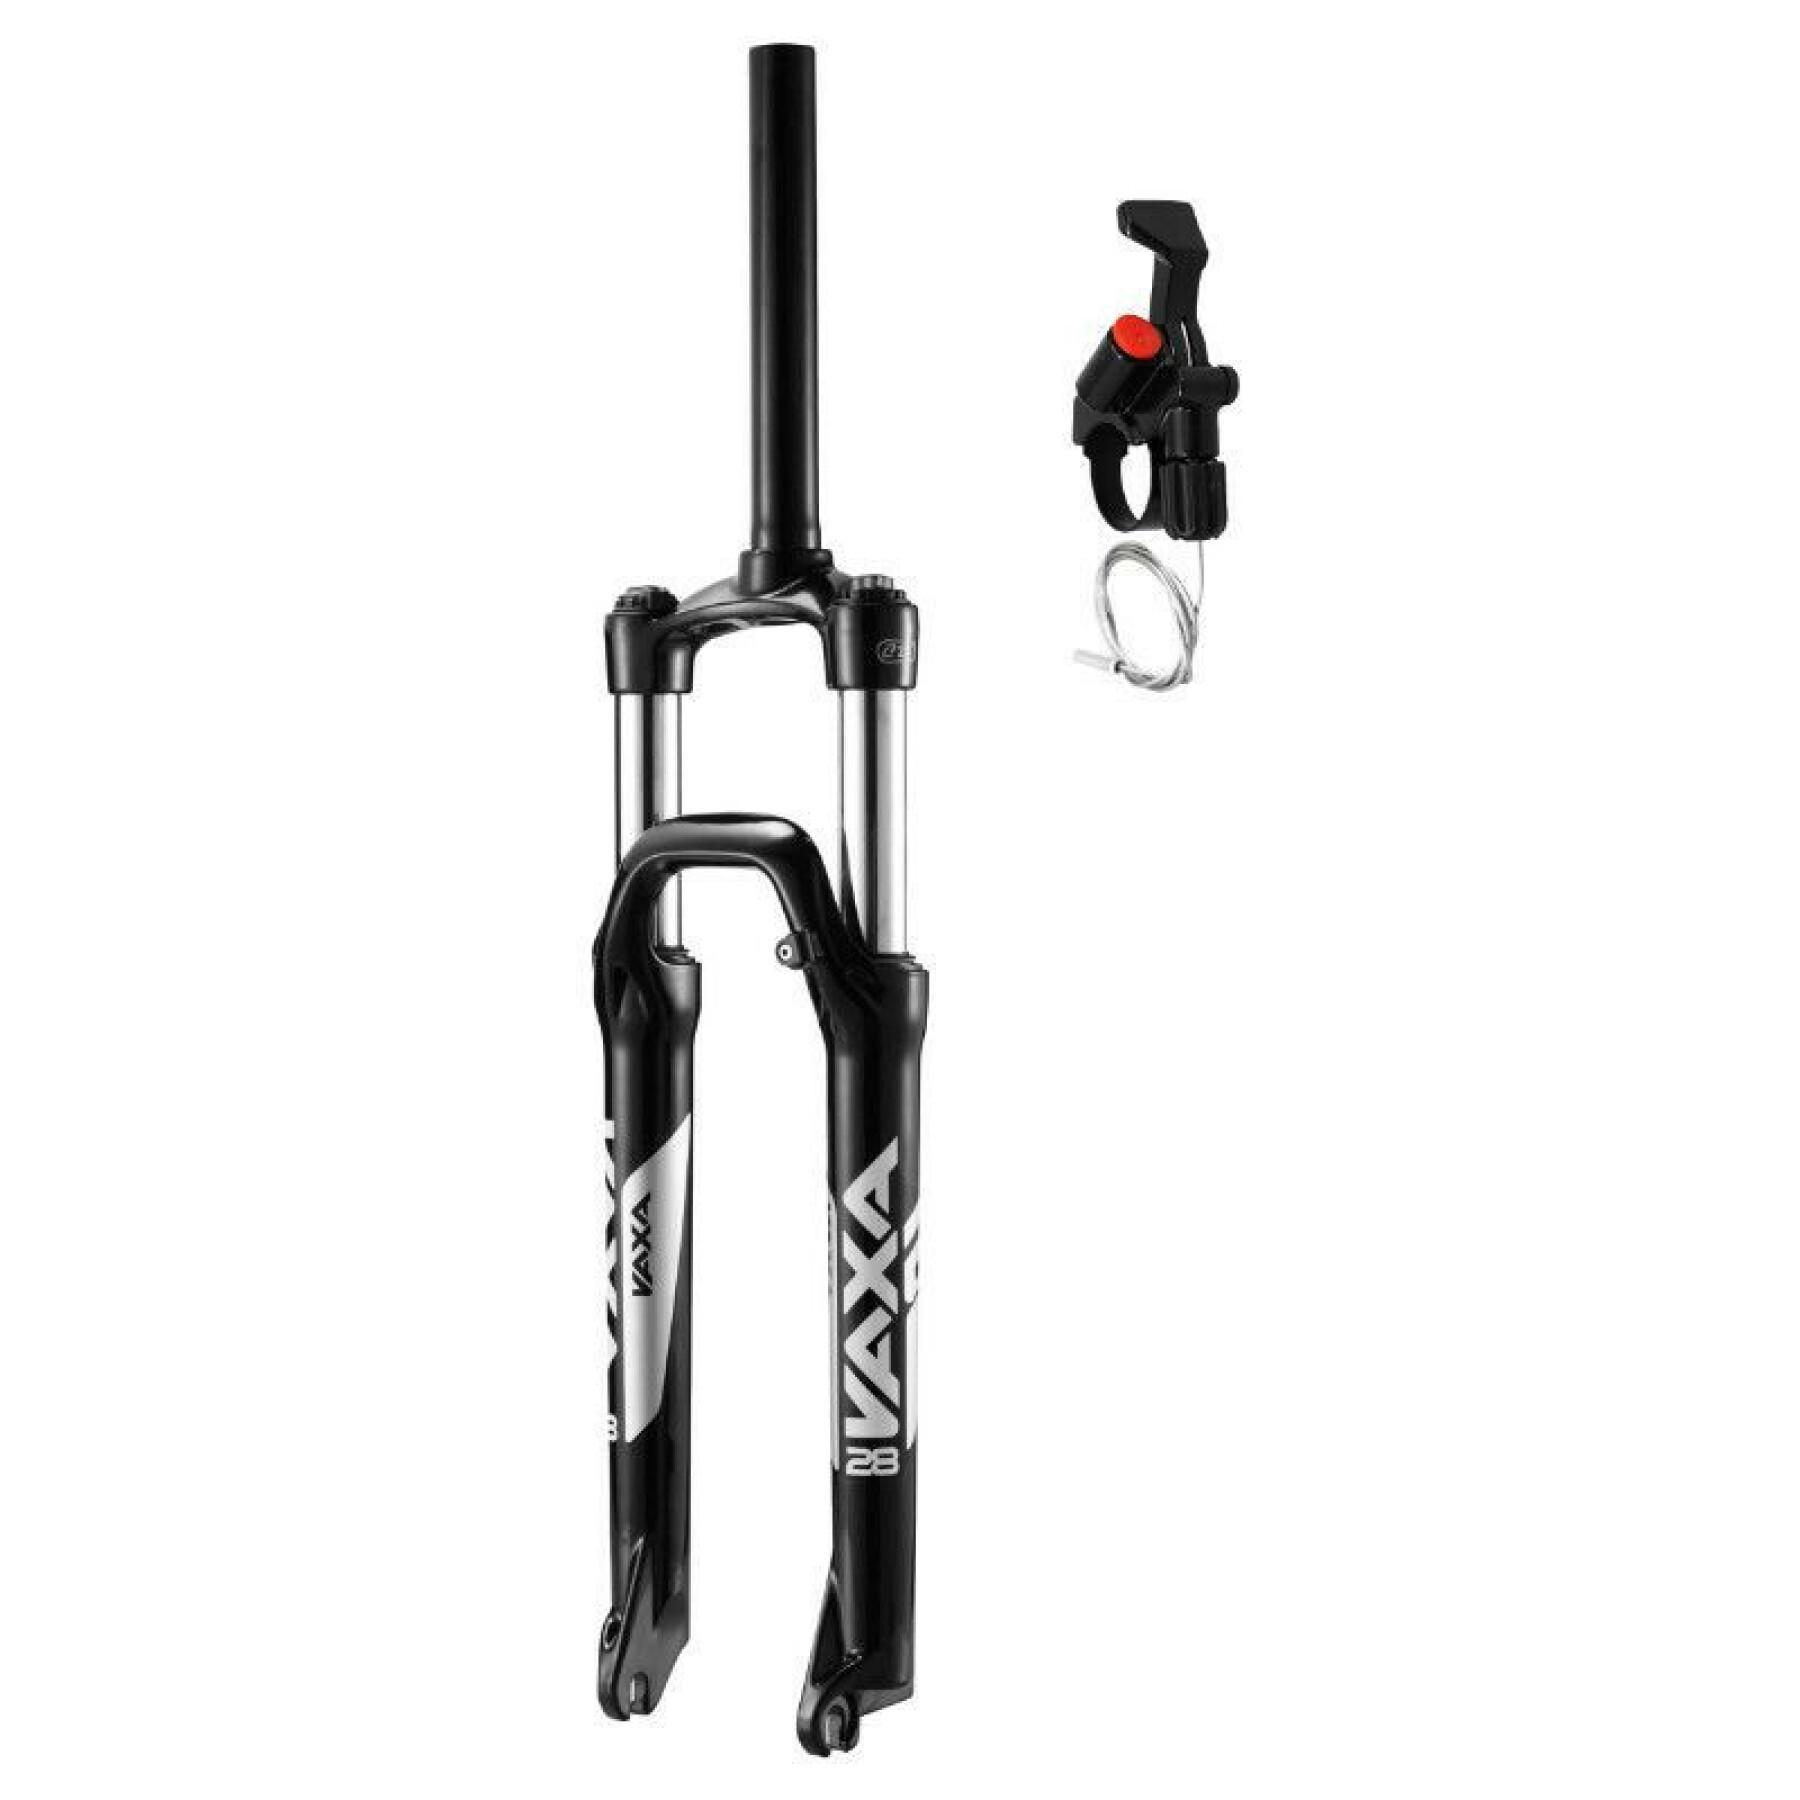 Regulowany widelec do rowerów górskich - blokada na kierownicy deb. 100mm gładki stelaż 295mm stożkowy 1"1-2 - 1''1-8-28,6 kompatybilny z tarczami zewnętrznymi Zoom Vaxa 28